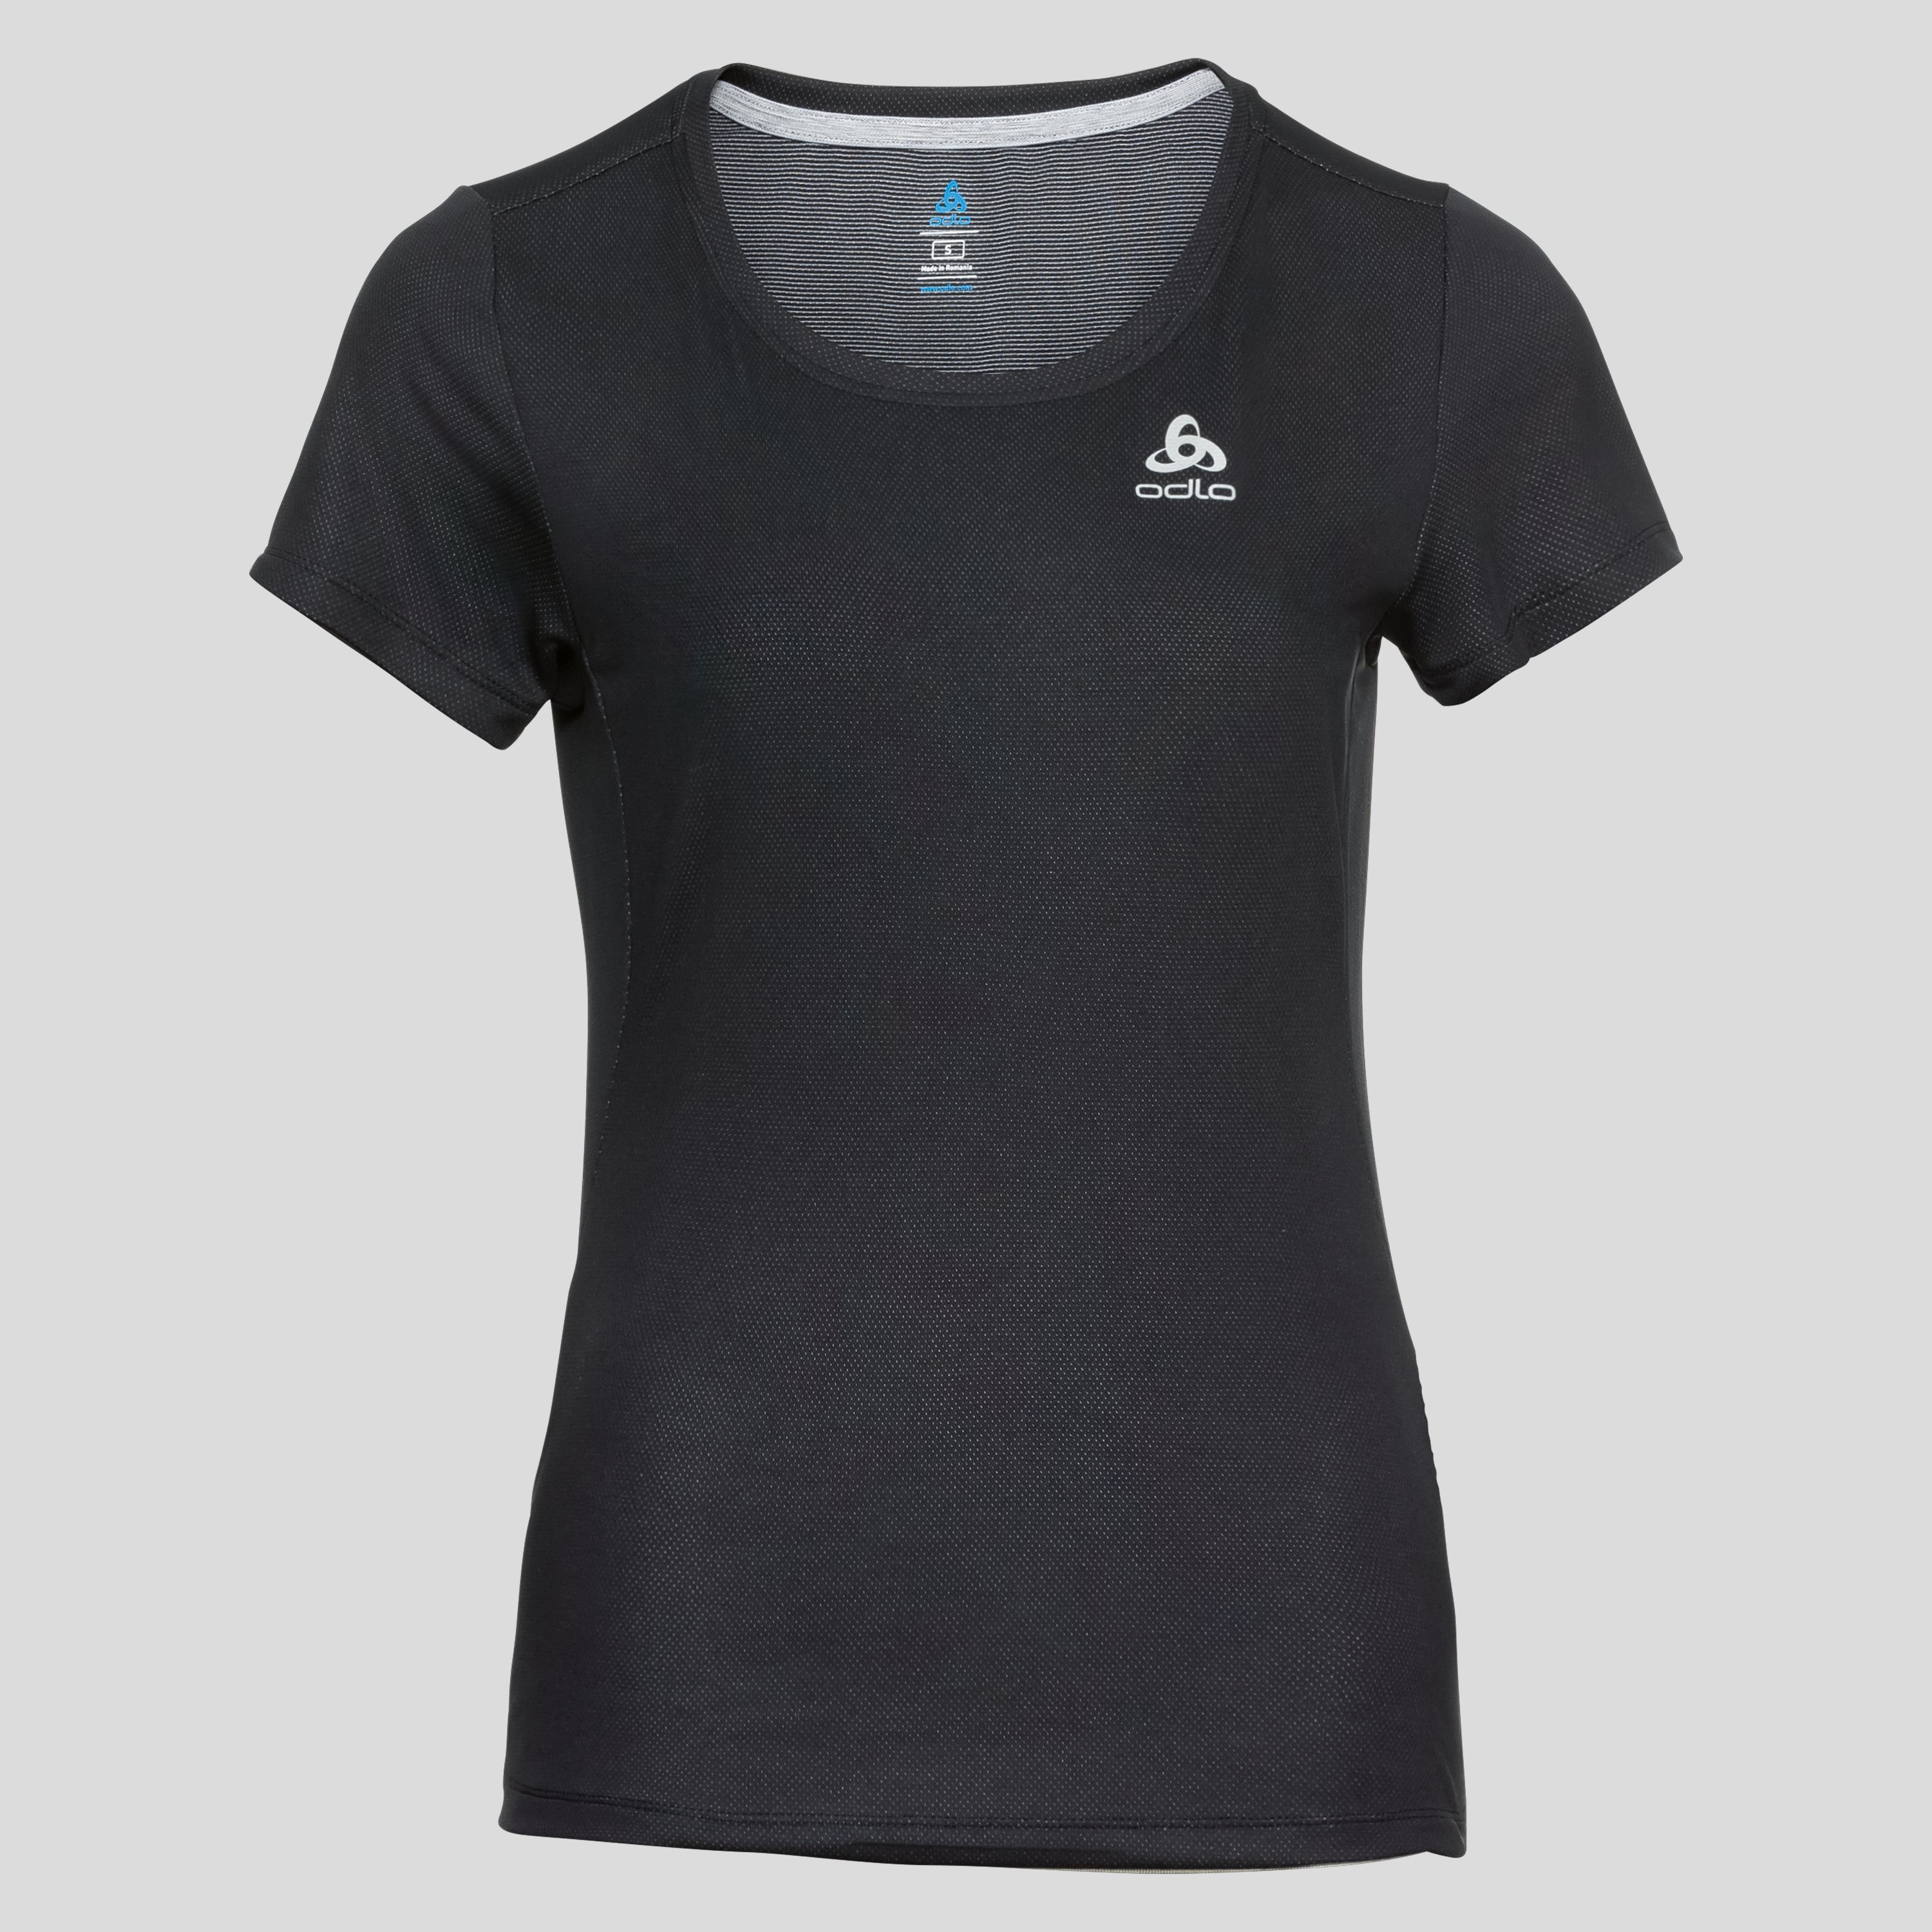 ODLO F-Dry T-Shirt für Damen, S, schwarz